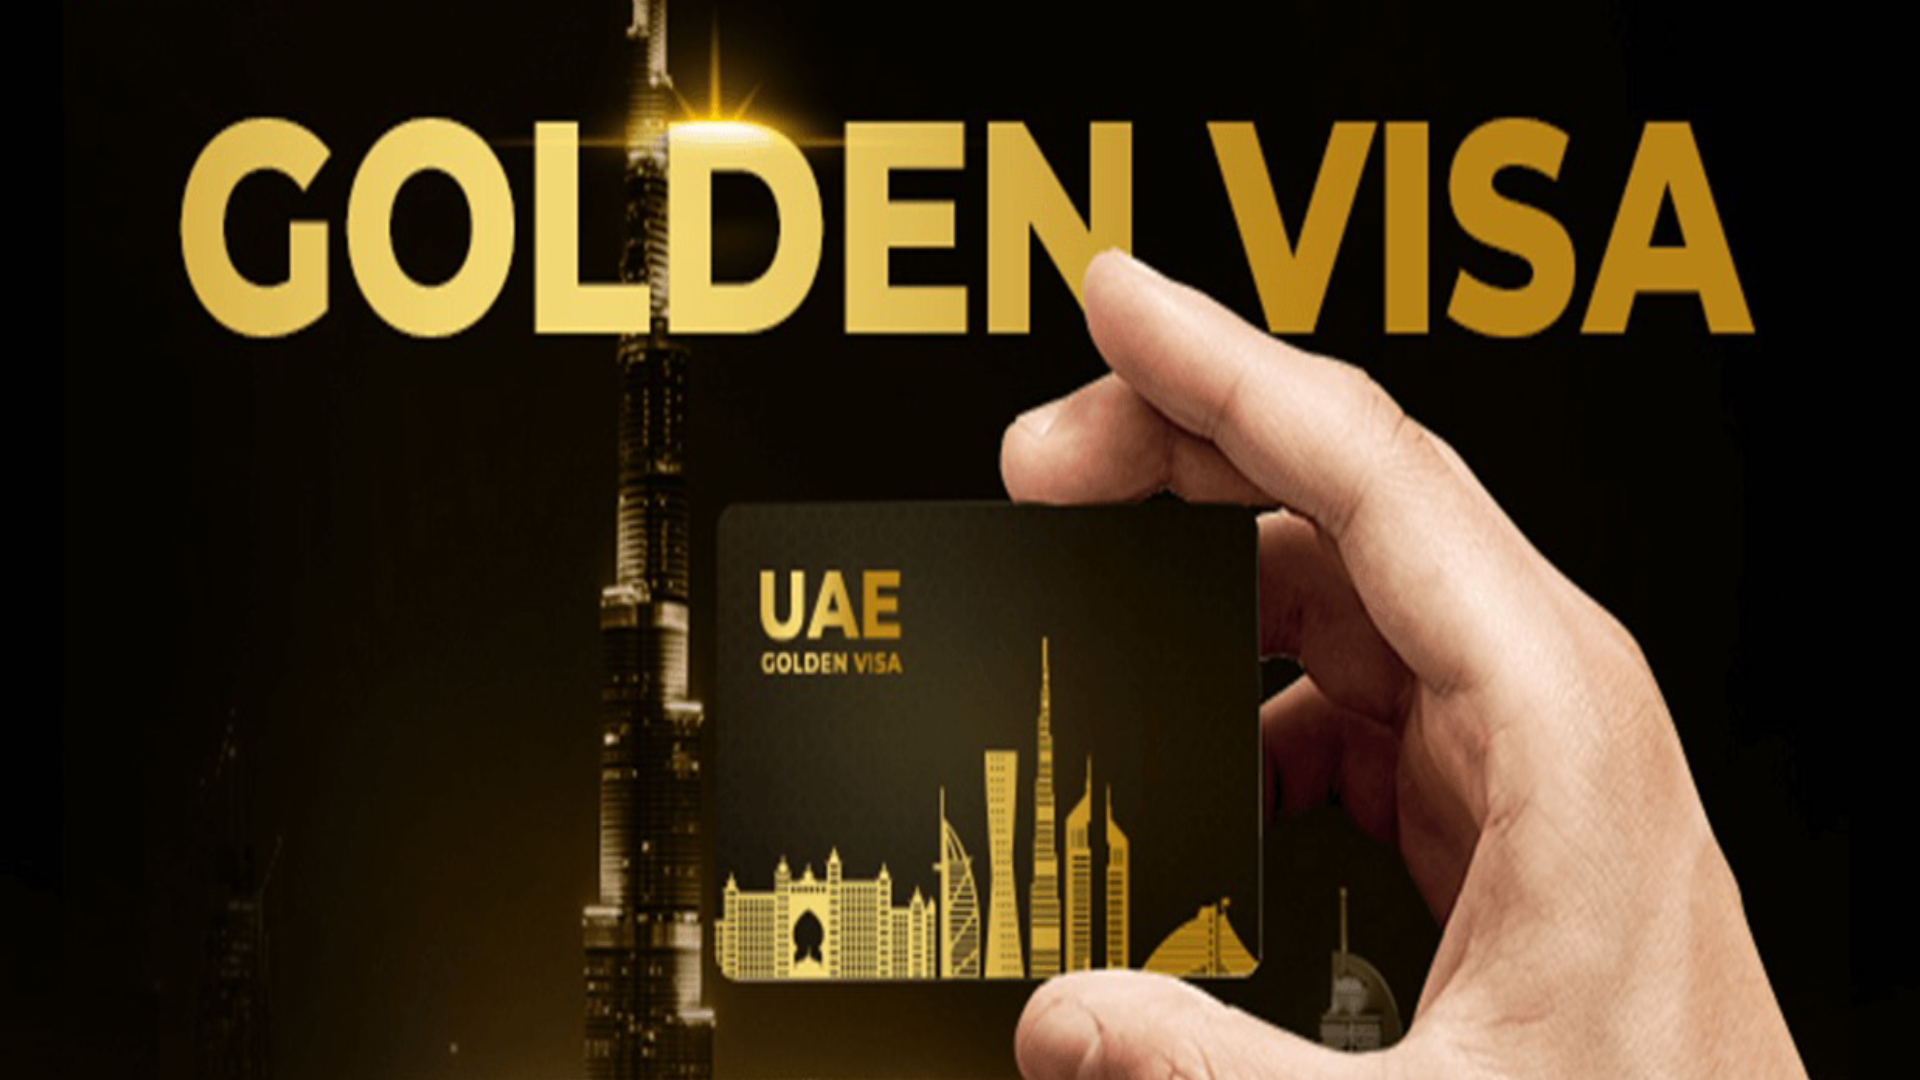 UAE Golden Visa Benefits and Requirements